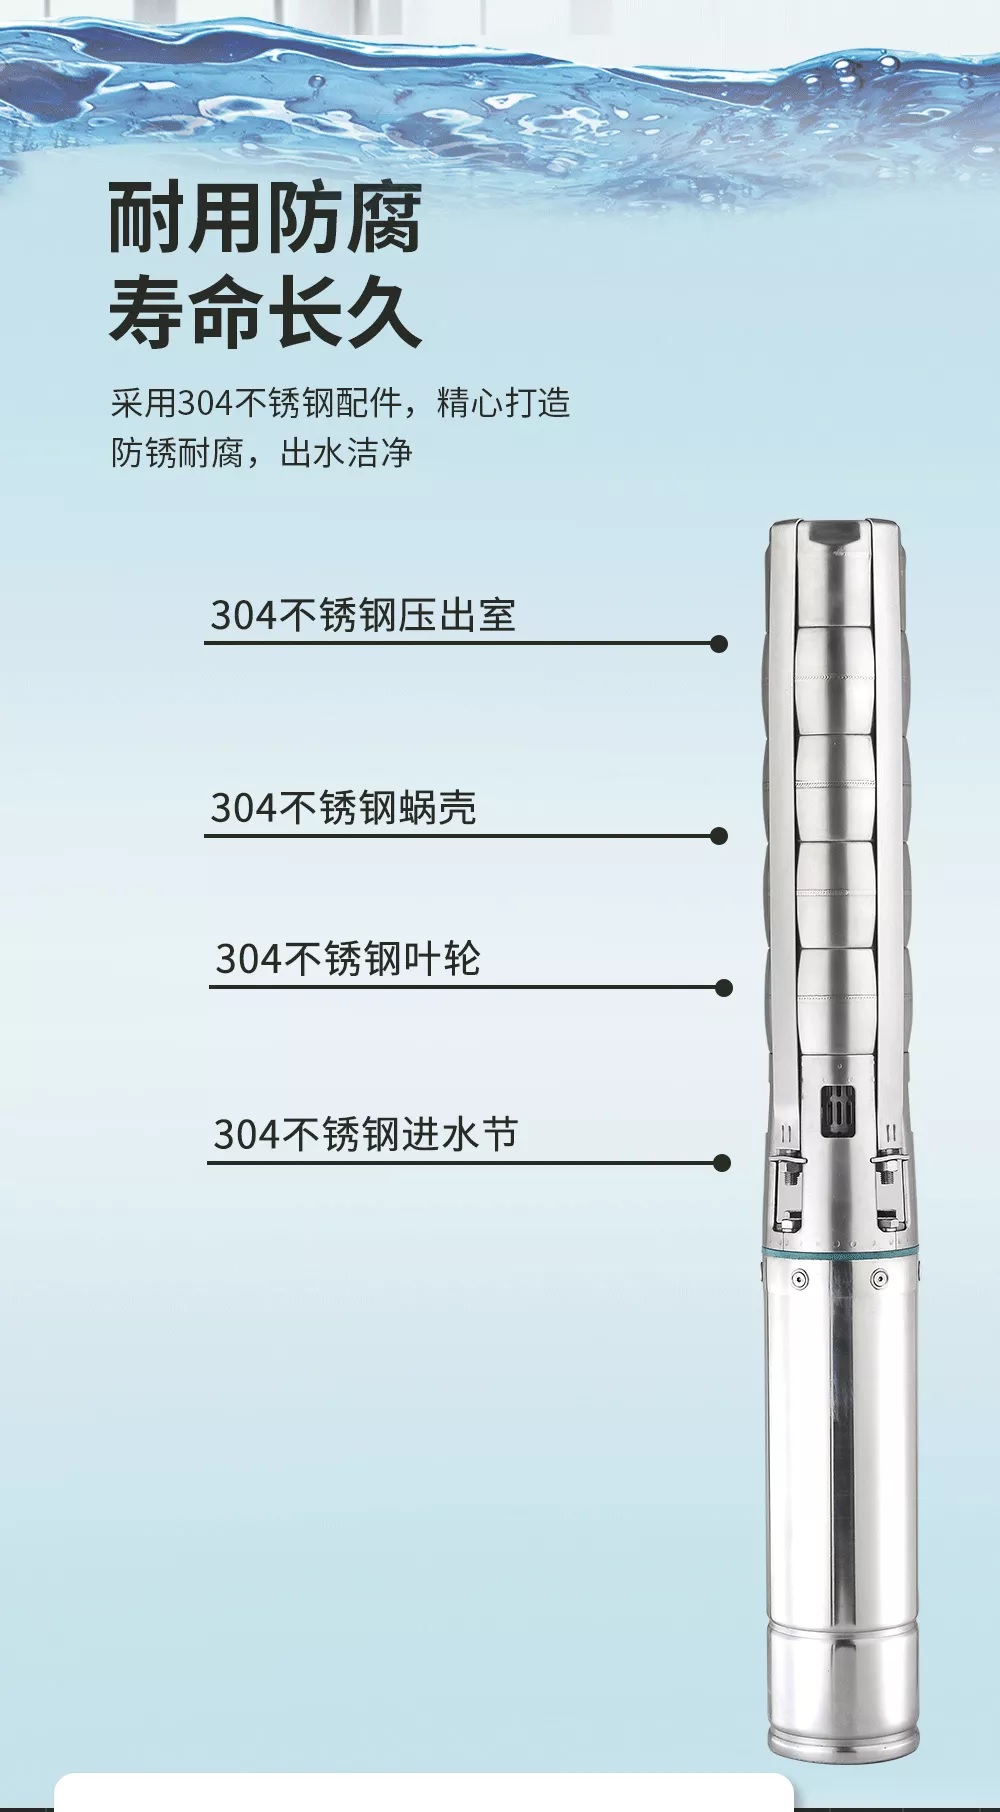 新界150QJY-S型井用潜水电泵新品上市(图5)